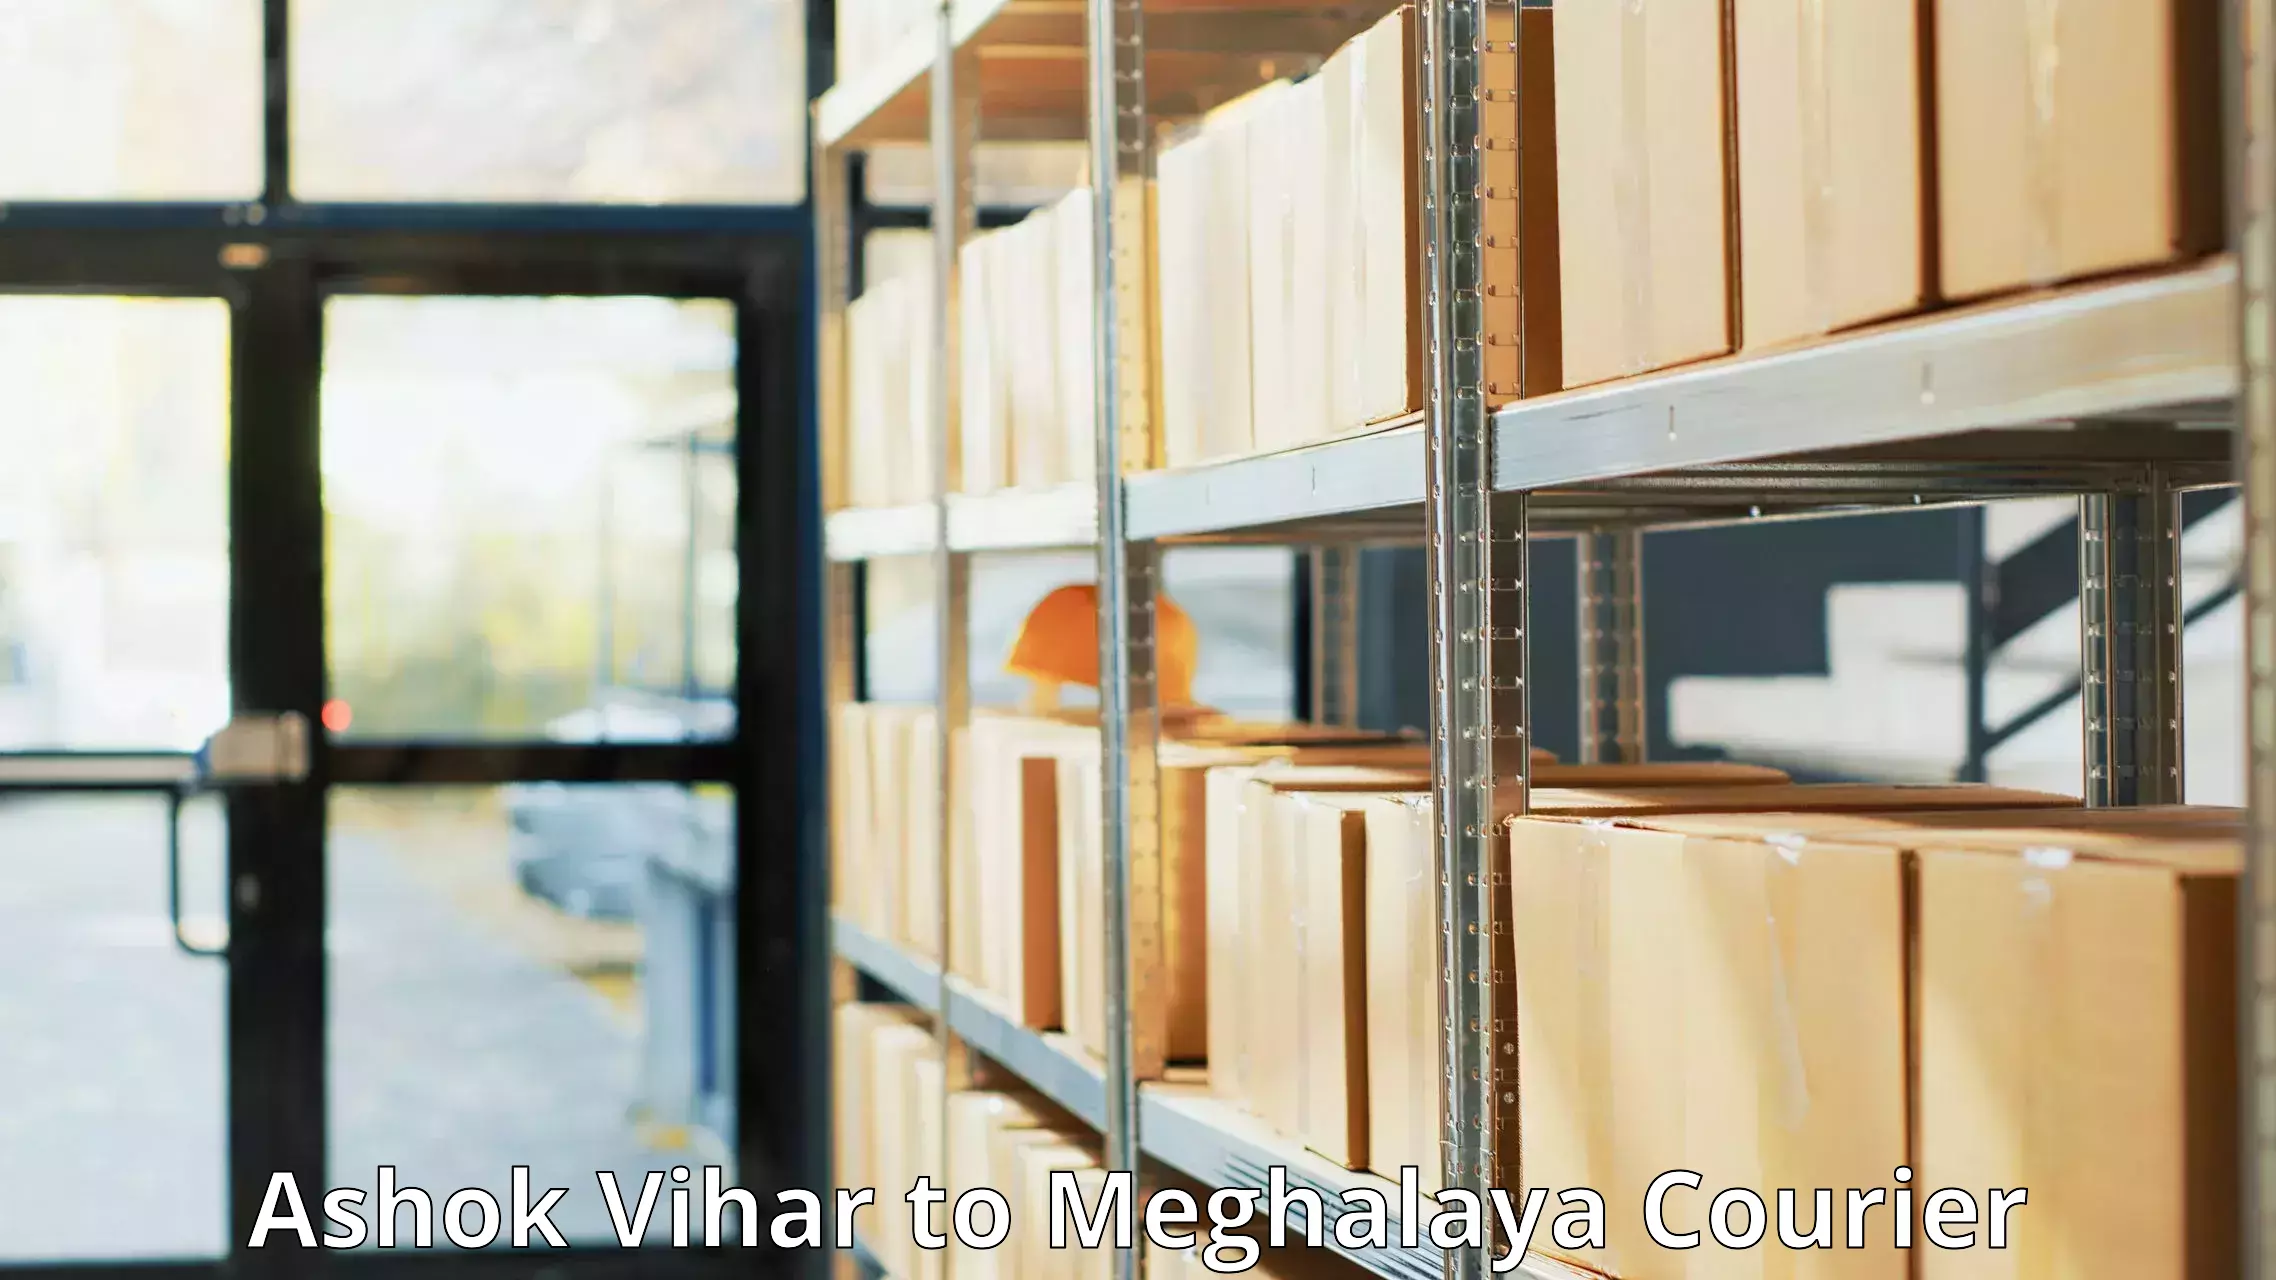 Global shipping solutions Ashok Vihar to Meghalaya